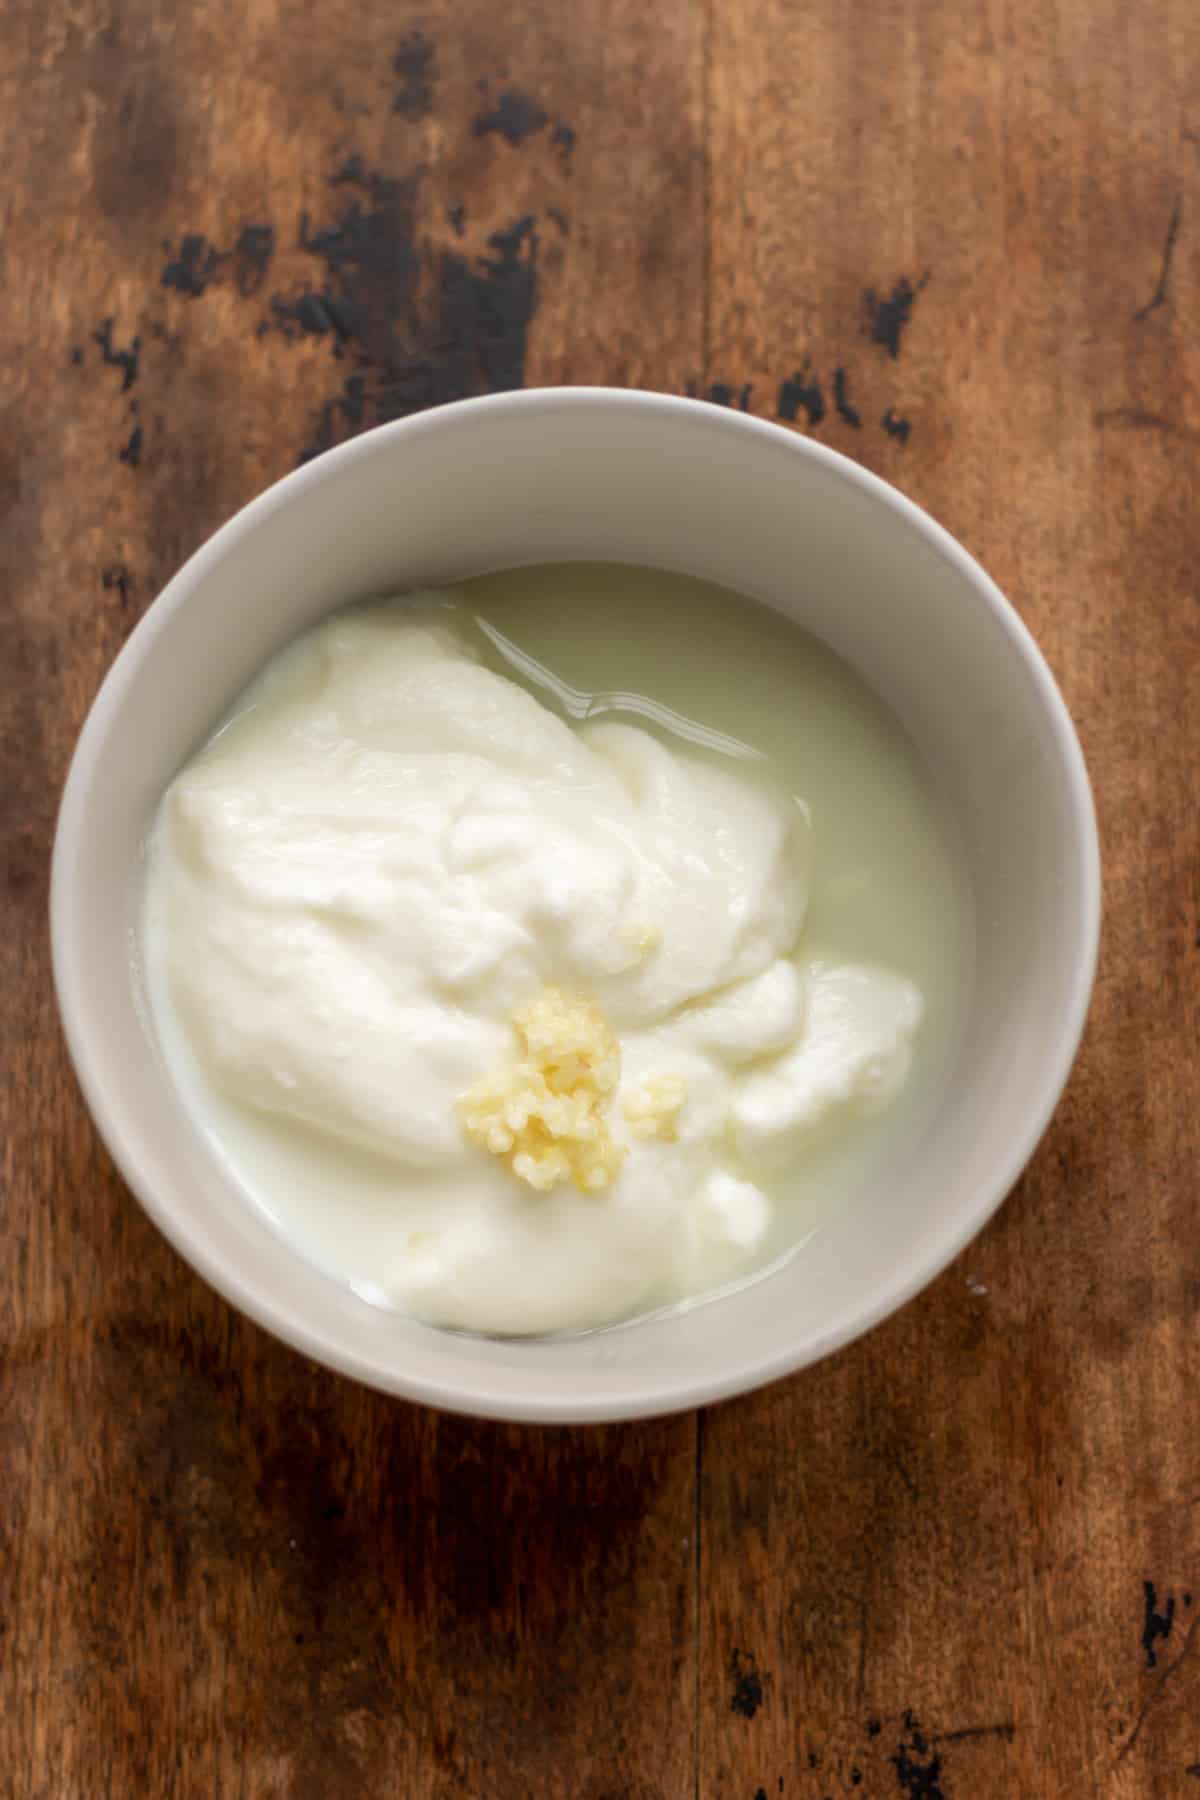 Garlic yogurt sauce ingredients in a bowl.